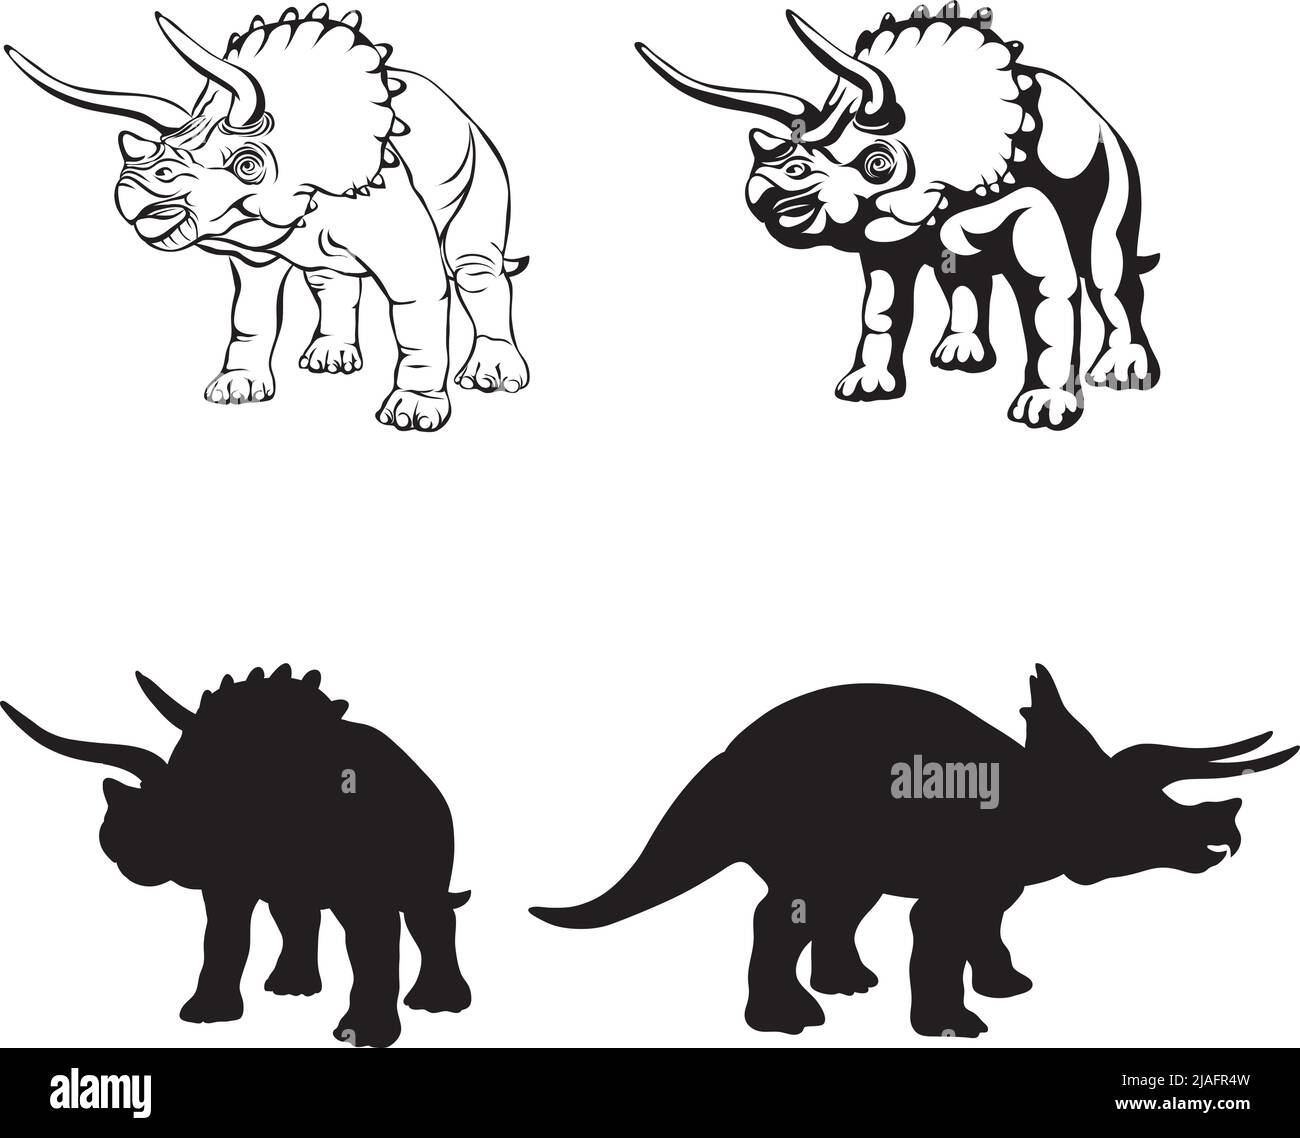 TriceraTop, imagen realista de dinosaurio, vector, posiciones, ilustración, blanco y negro, silueta, logotipo, marca registrada, galón para decoración y diseño Ilustración del Vector